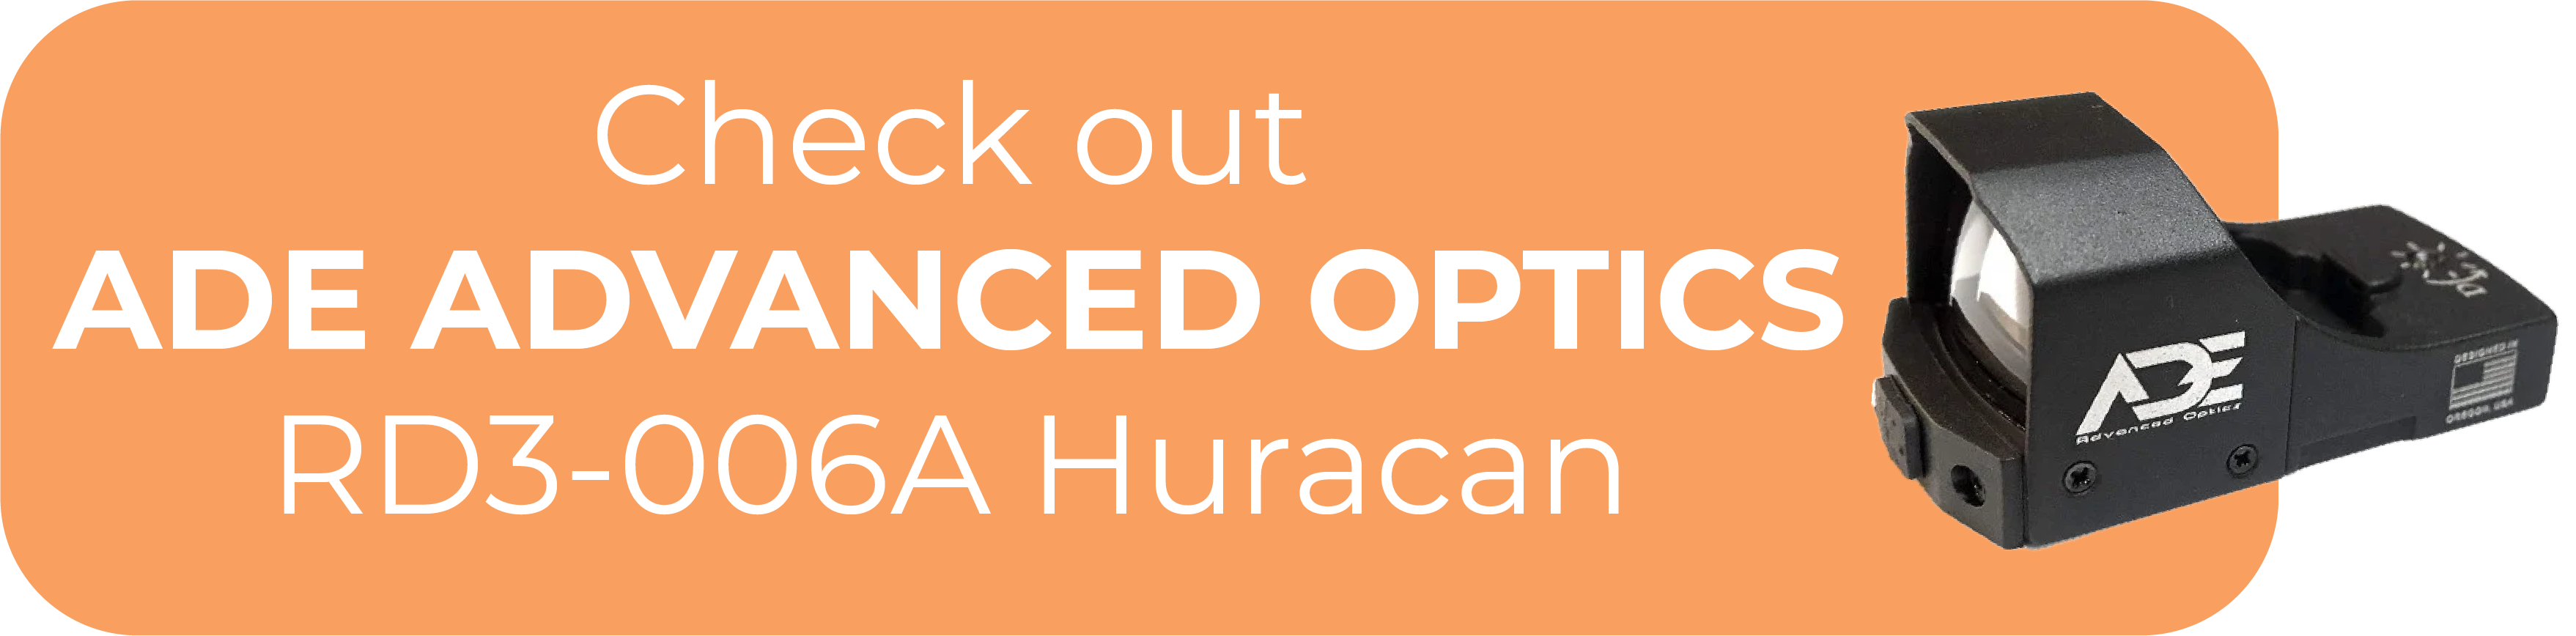 ADE Advanced Optics RD3-006A Huracan Footprint